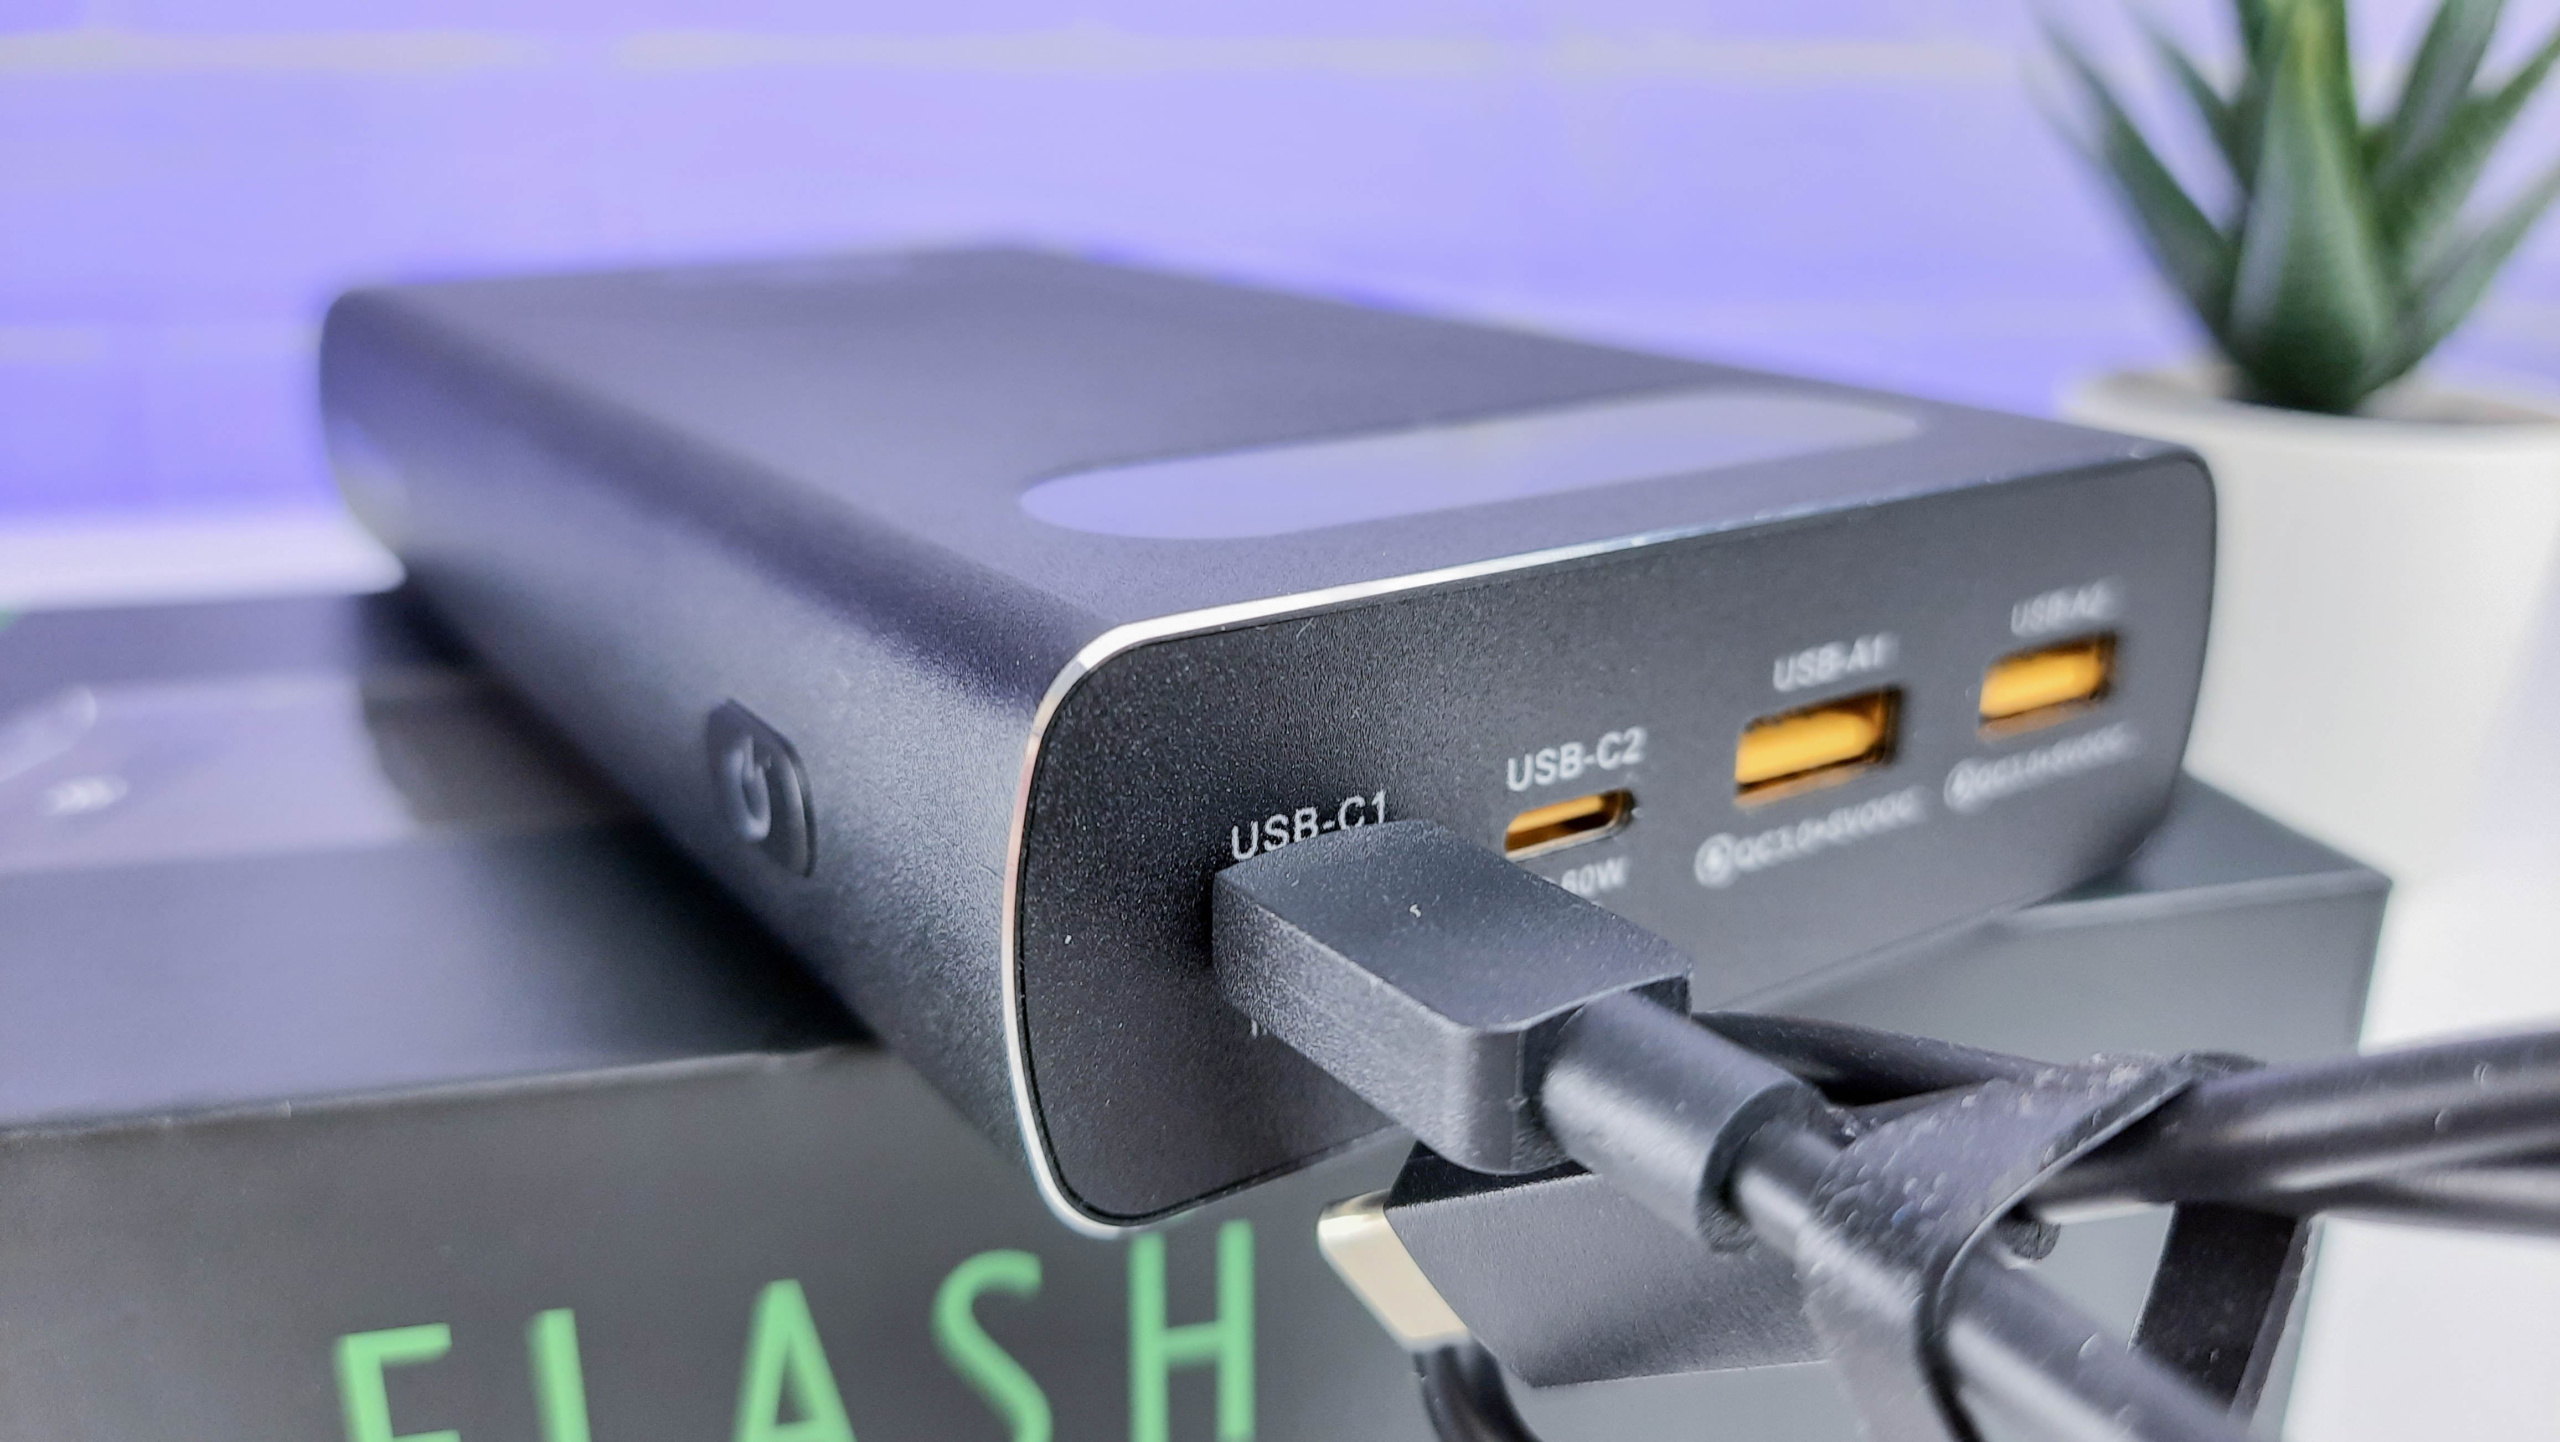 Огляд ZAMAX Flash Power Bank 200W: металевий павербанк для ноутбуків і портативних ігрових консолей за ціною $110